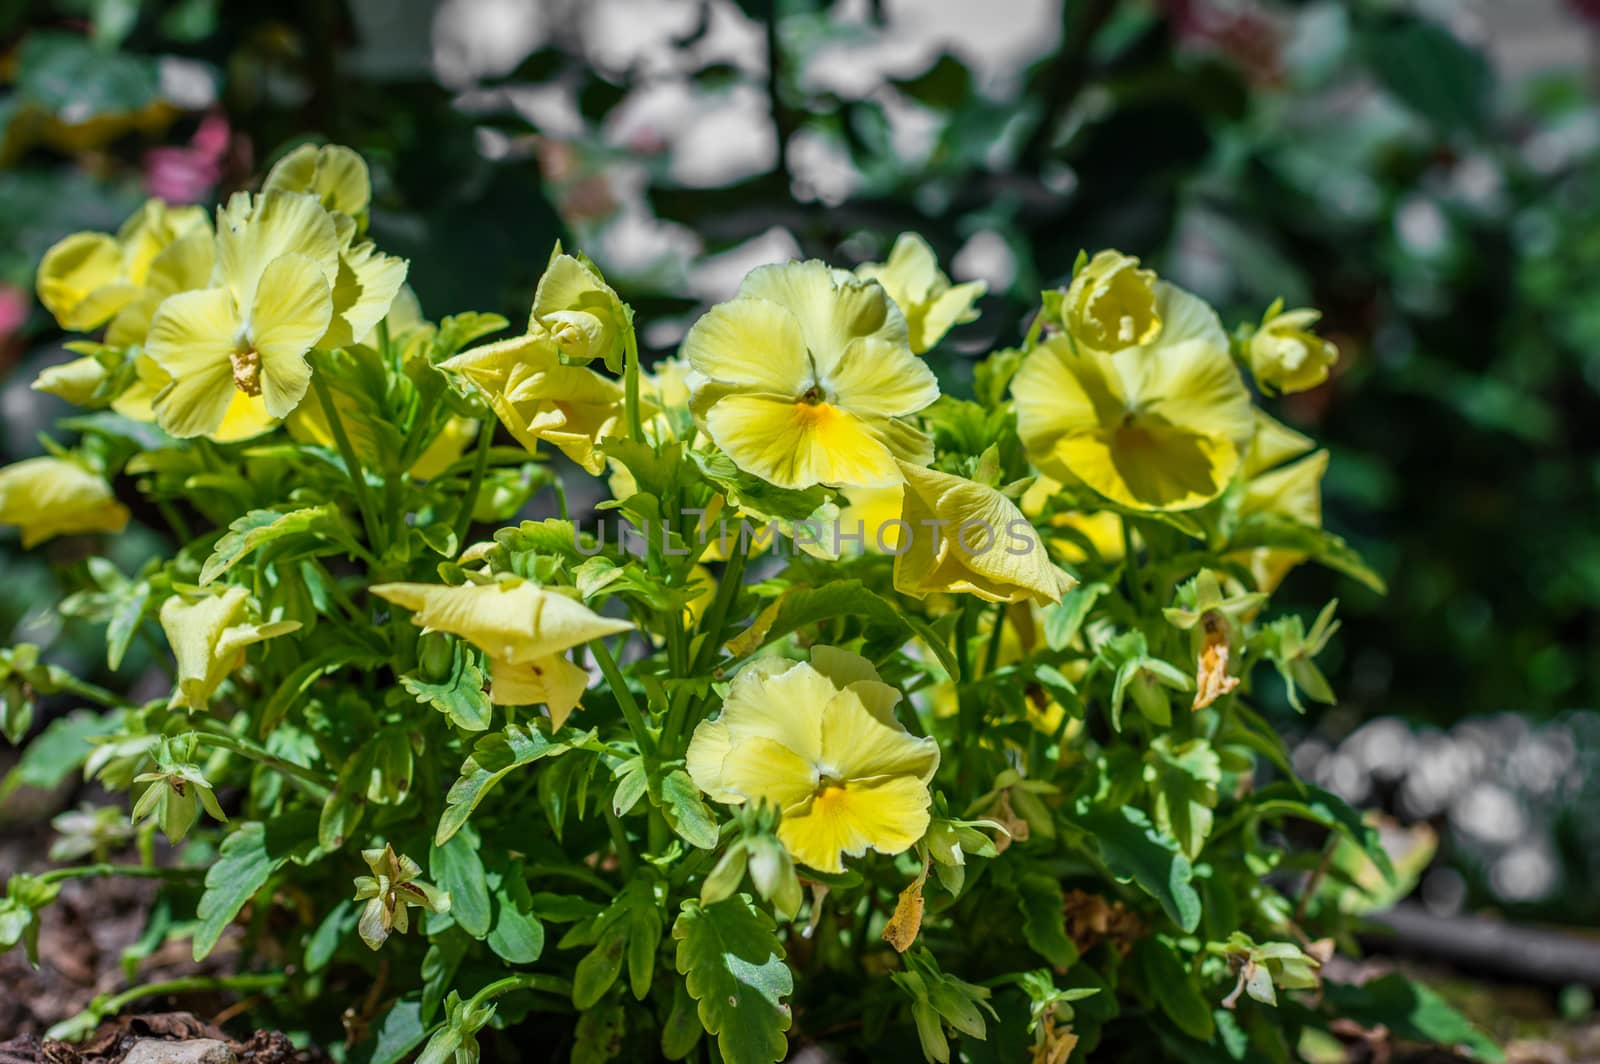 yellow flowers in the garden by okskukuruza